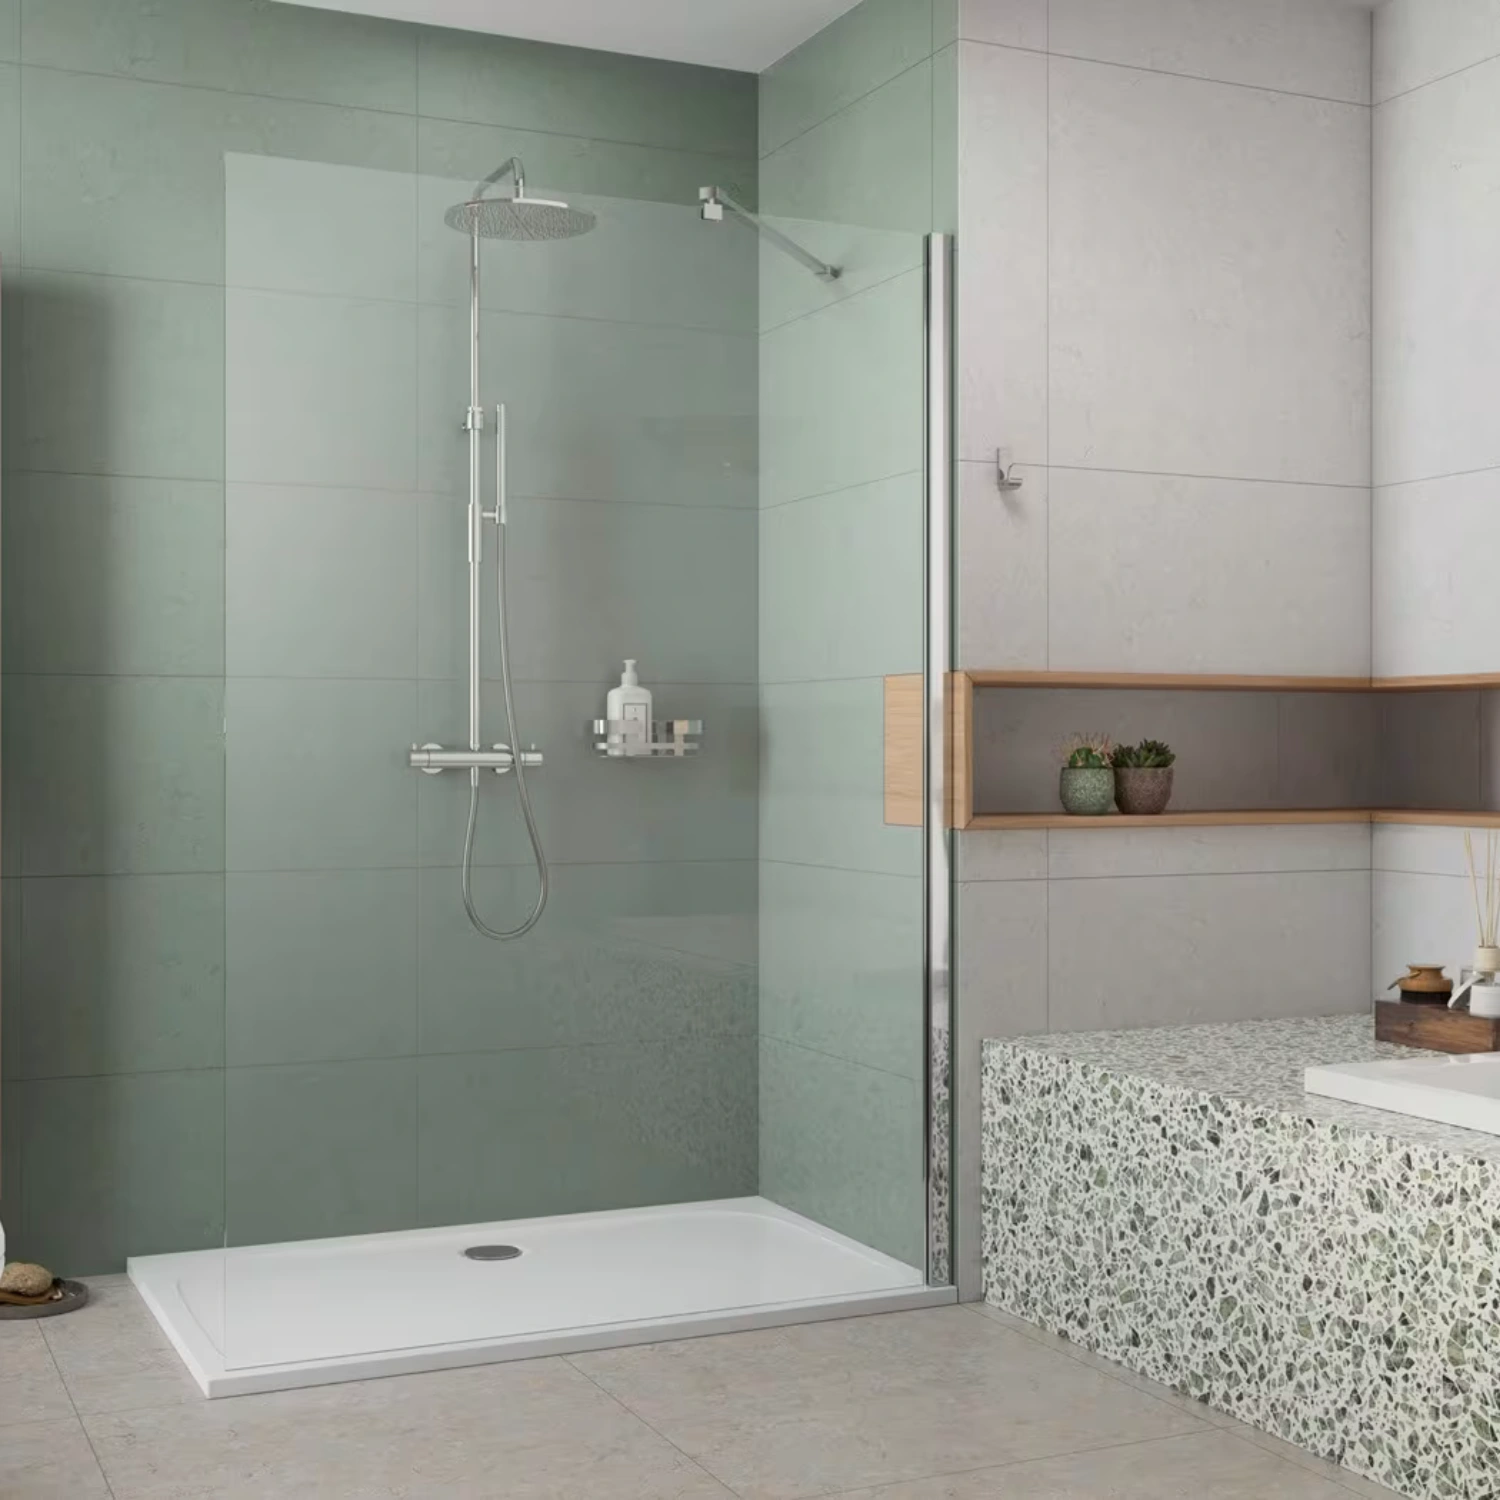 Grünliche Badezimmer-Farbe als Idee zur Raumtrennung